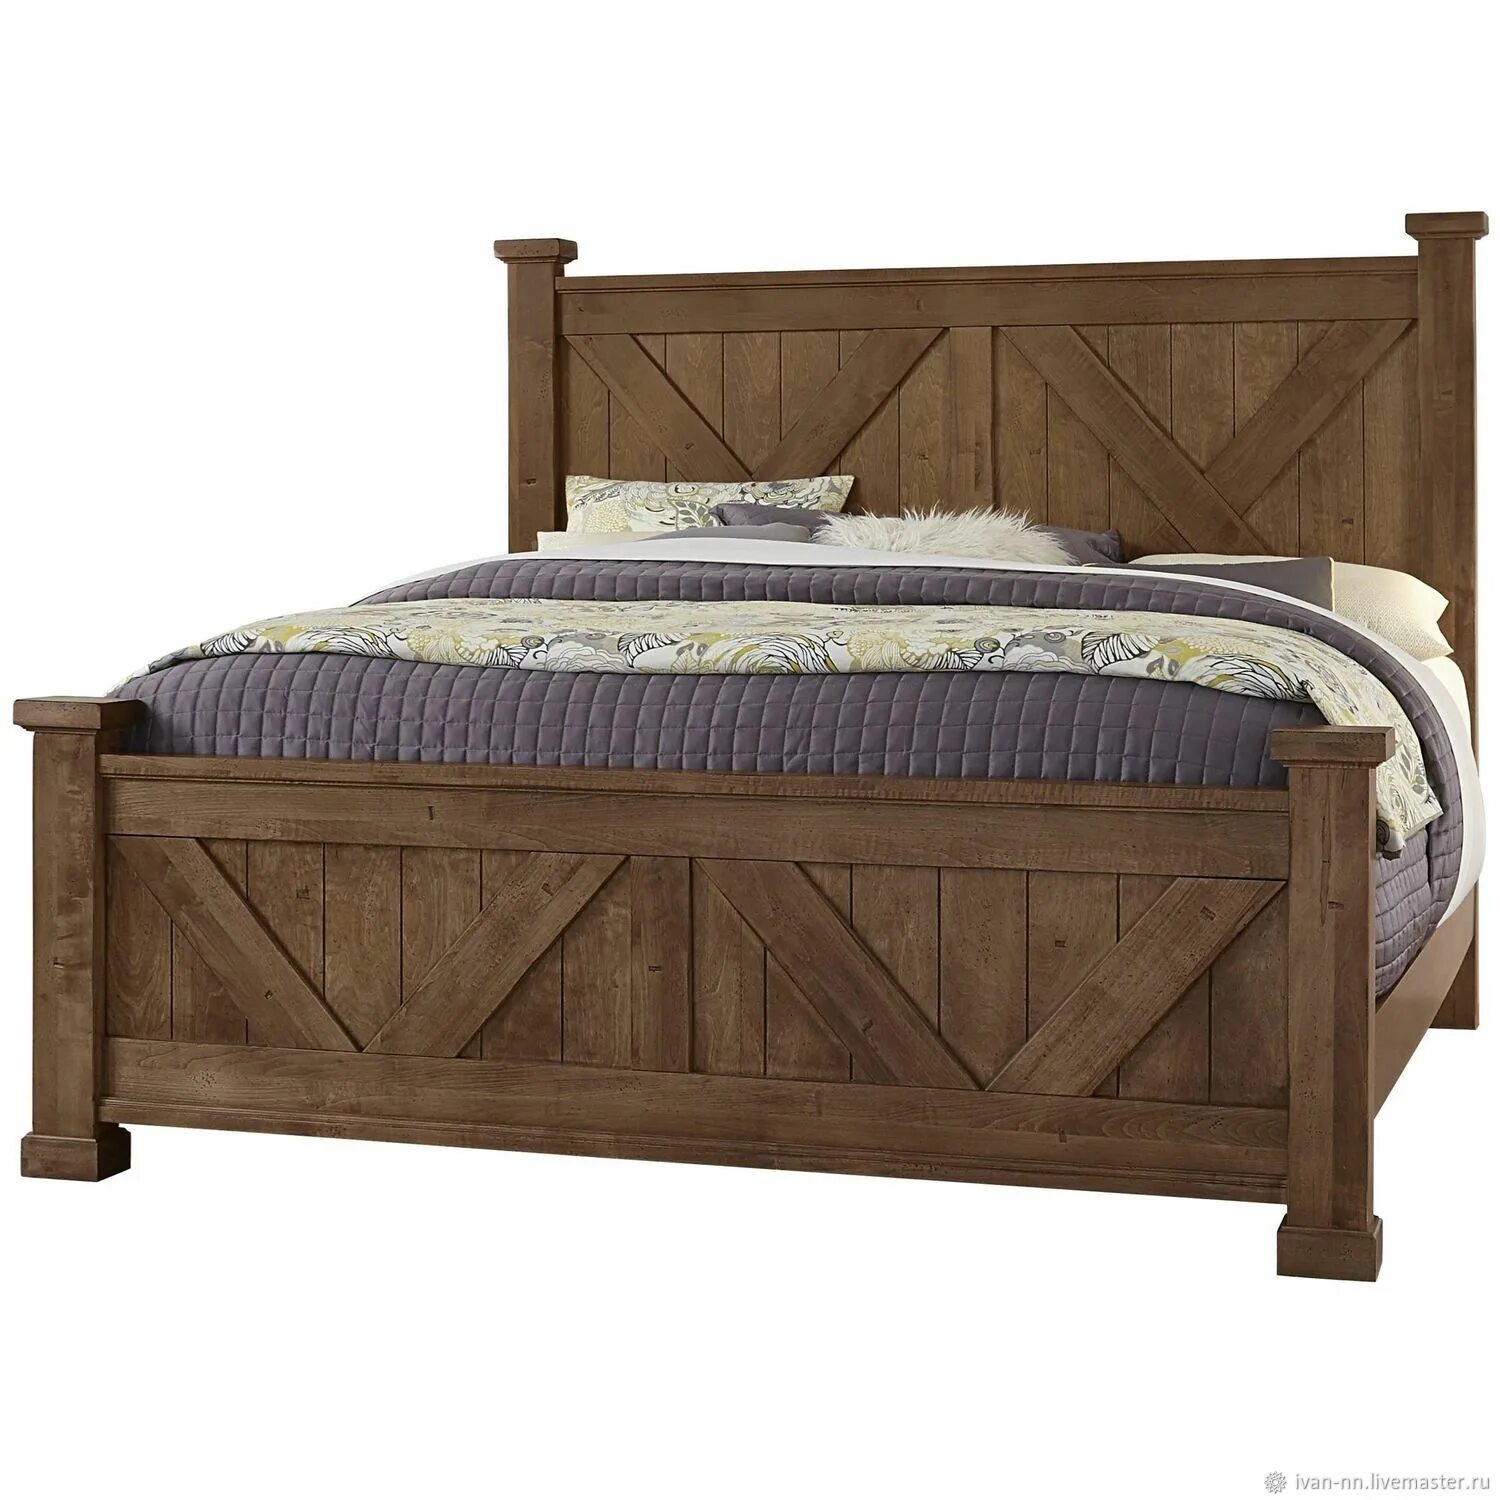 Кровать Rino 180х200. Кровать деревянная. Кровать из массива. Кровать из натурального дерева. Кровать из массива дерева купить в москве